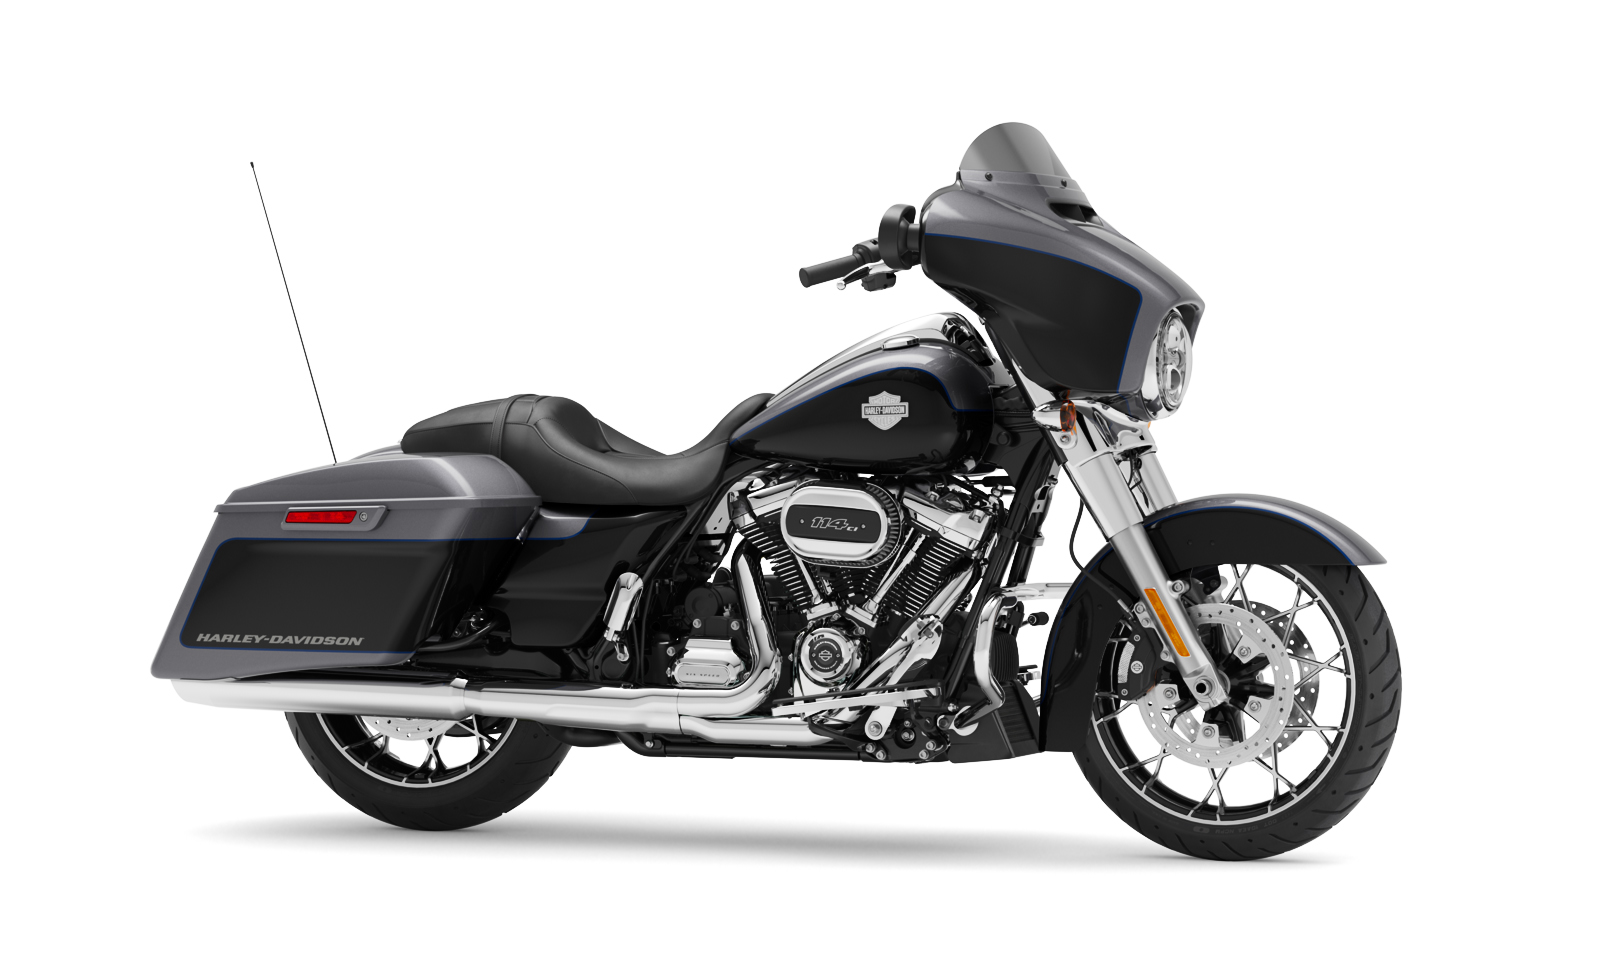 2020 Harley Davidson Street Glide Special Vivid Black Promotion Off59